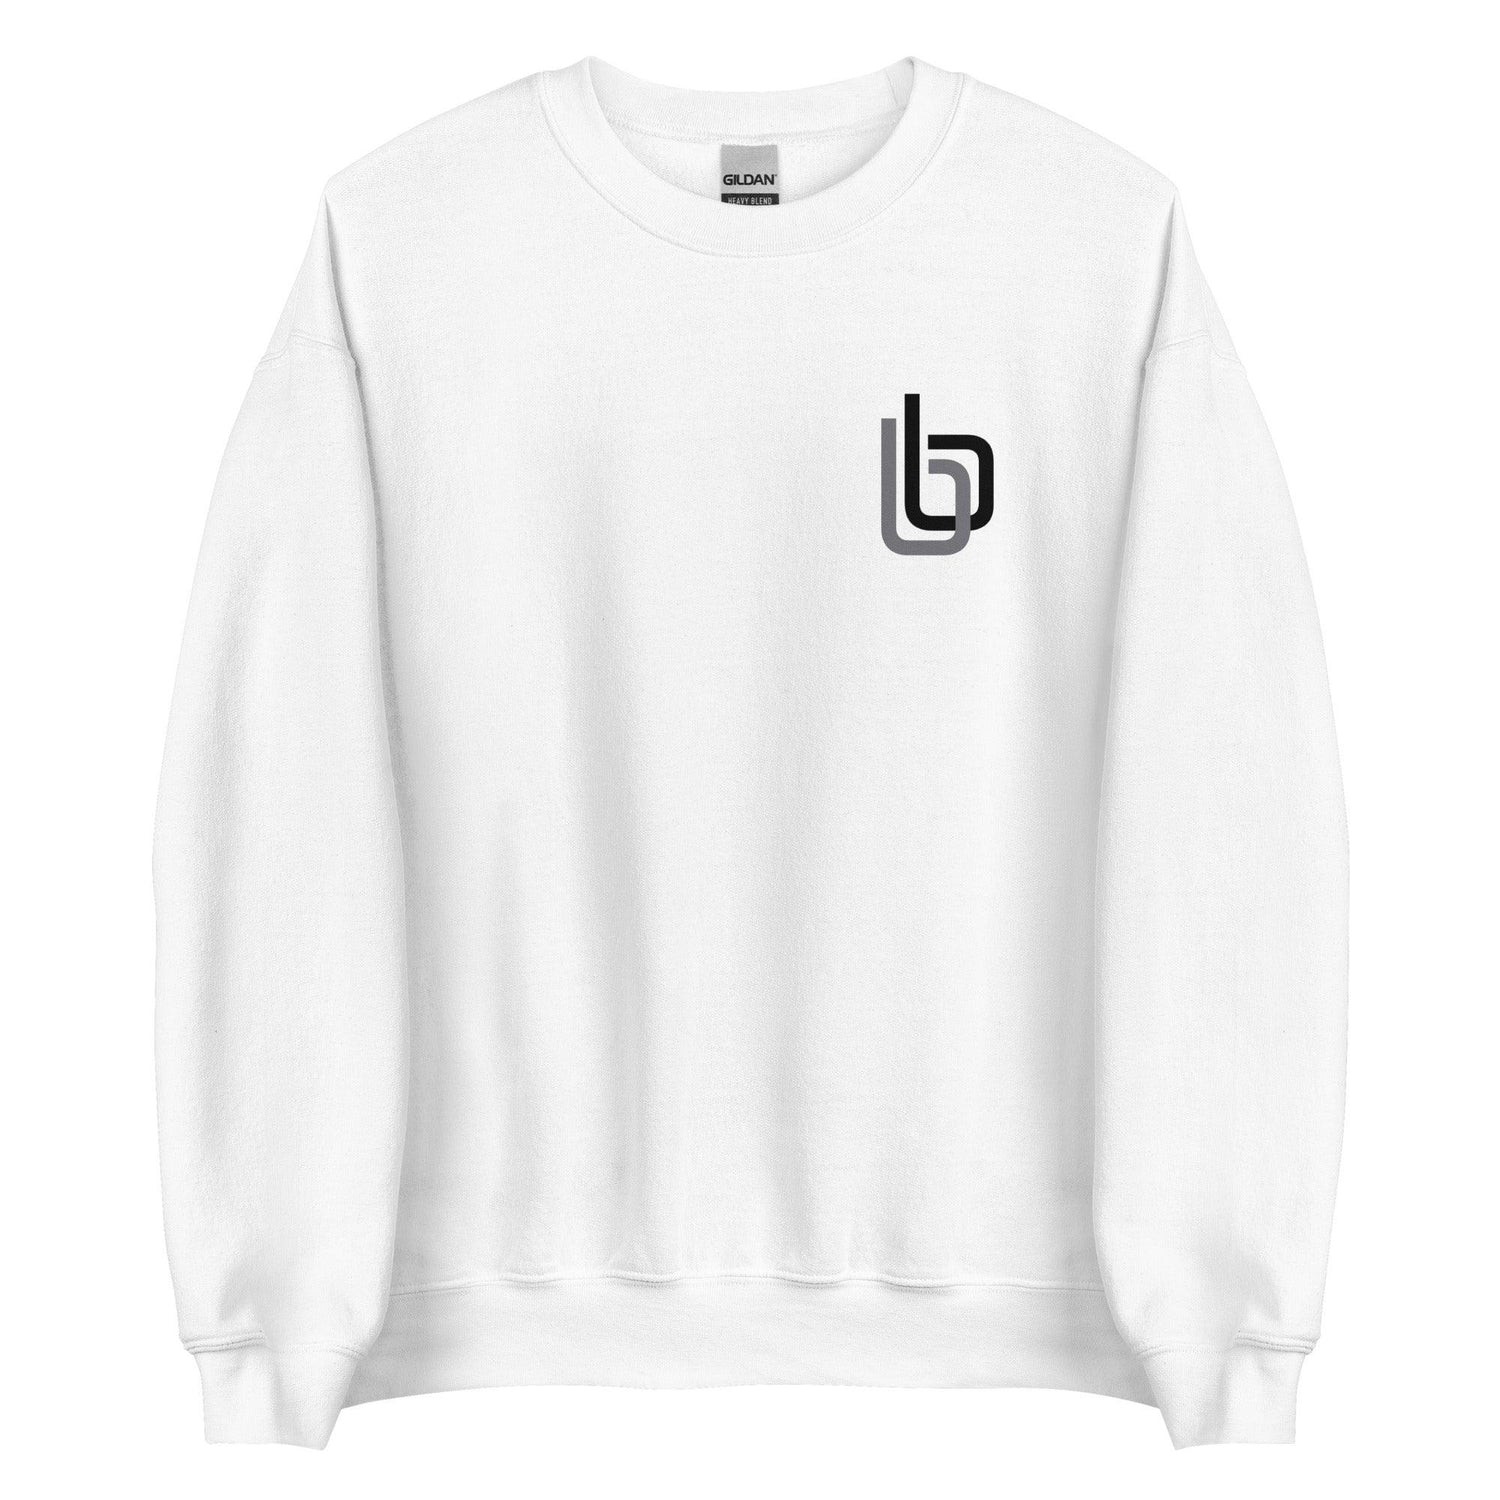 Byron Buxton “bb” Sweatshirt - Fan Arch